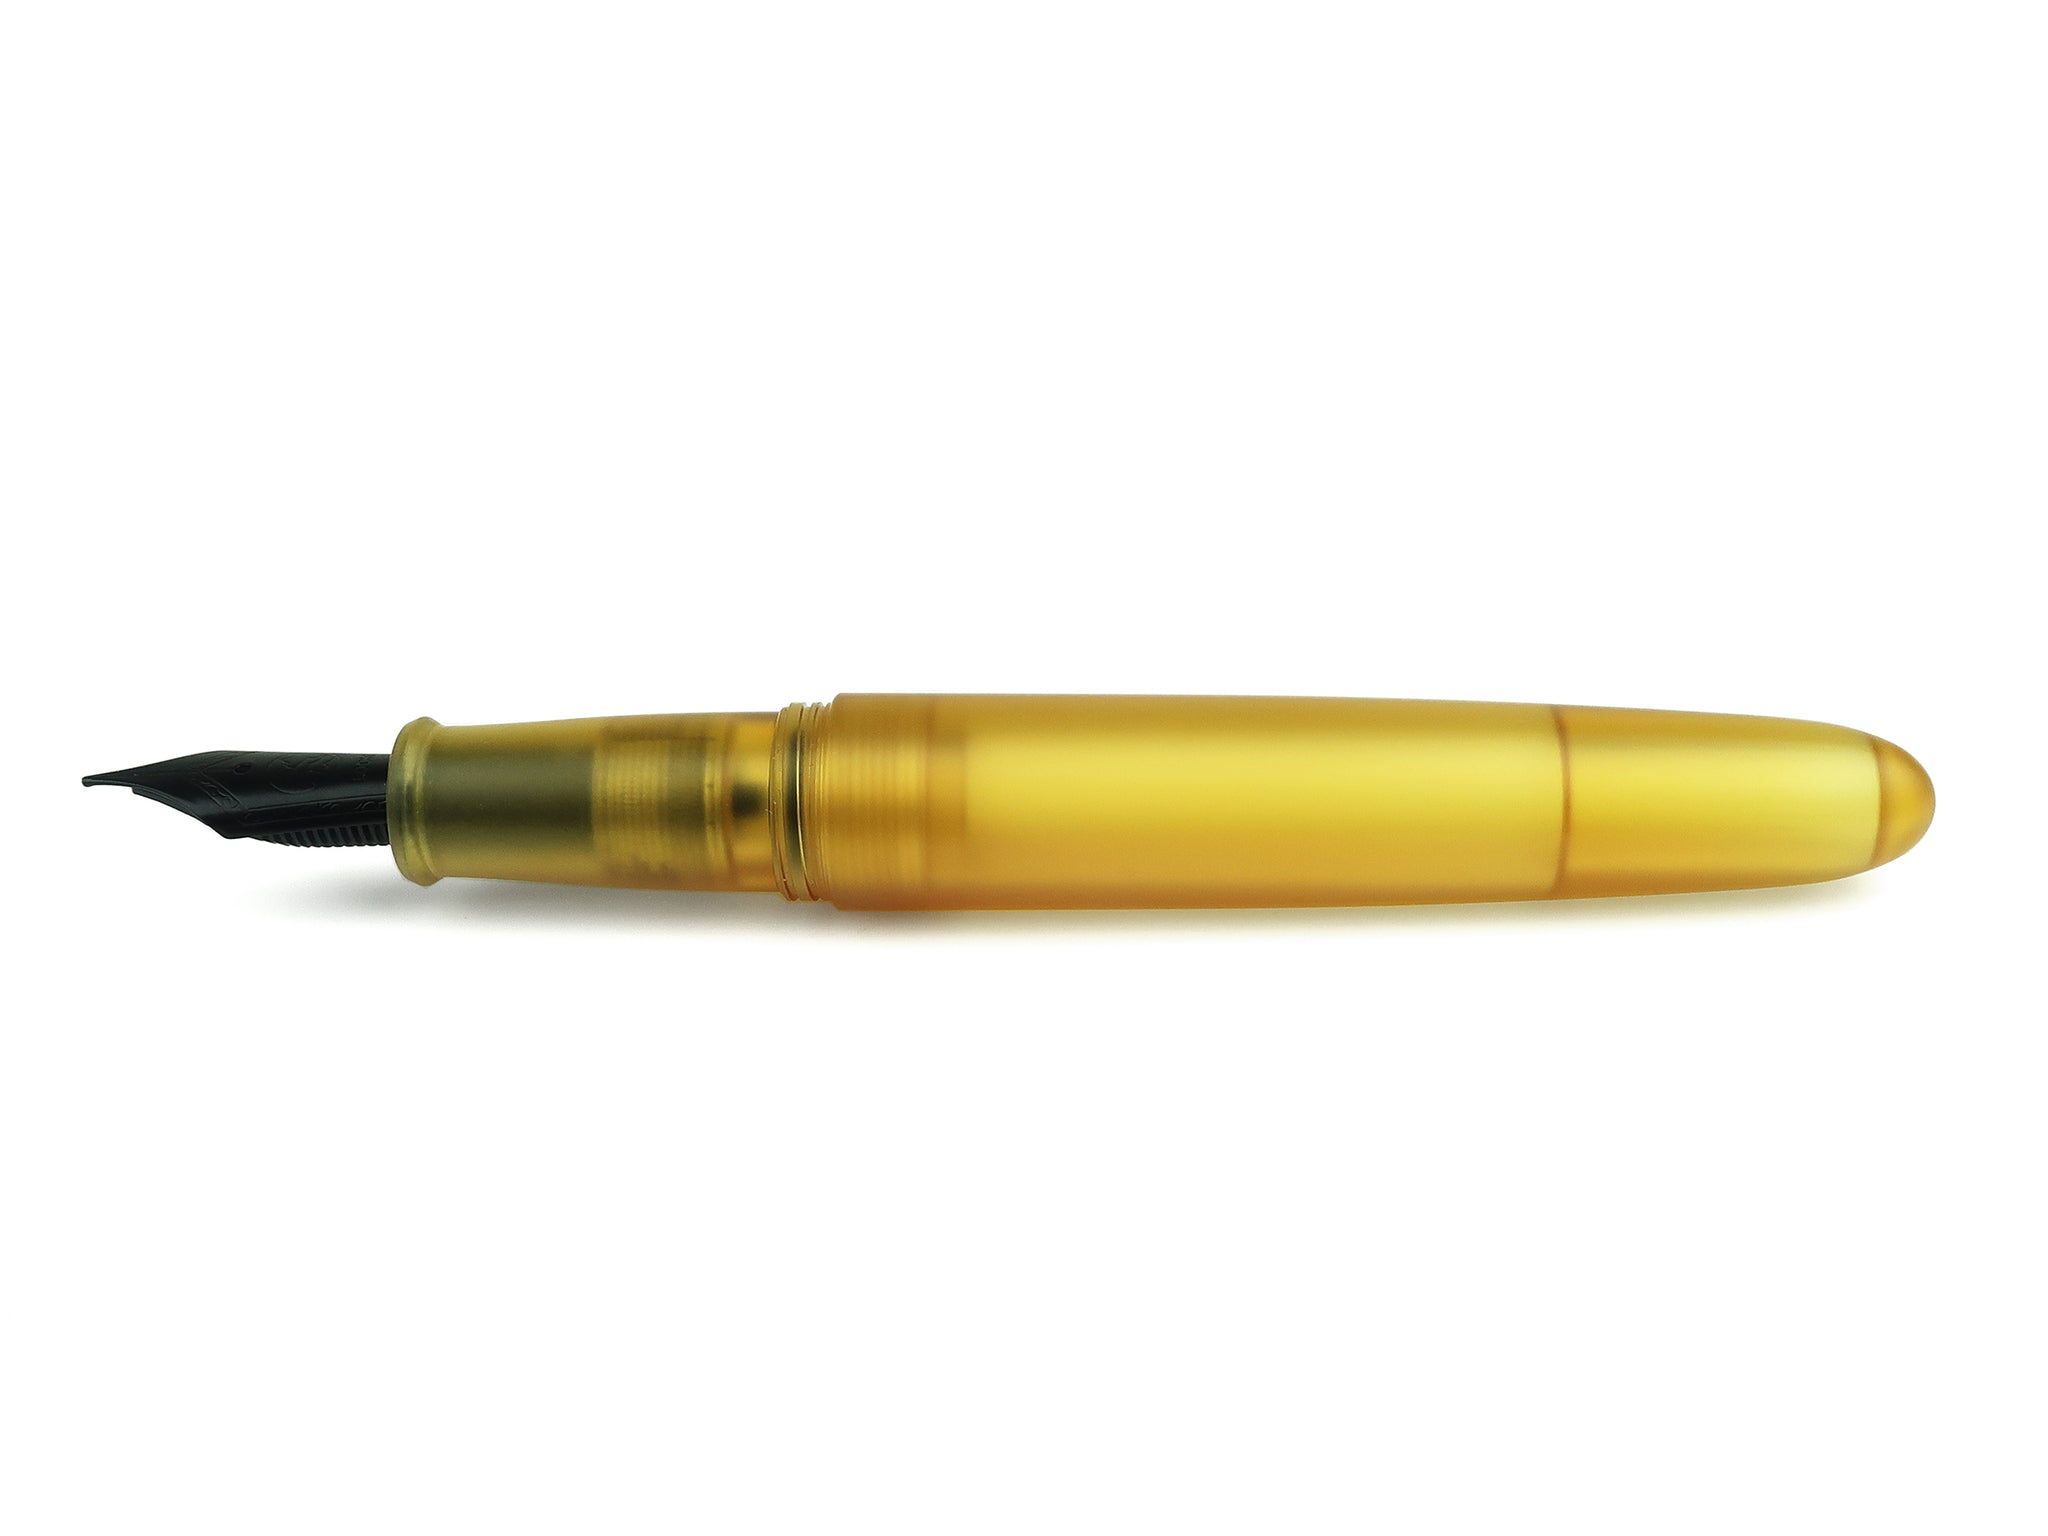 ARIA Ballpoint Pen For BiC - Black Aluminum